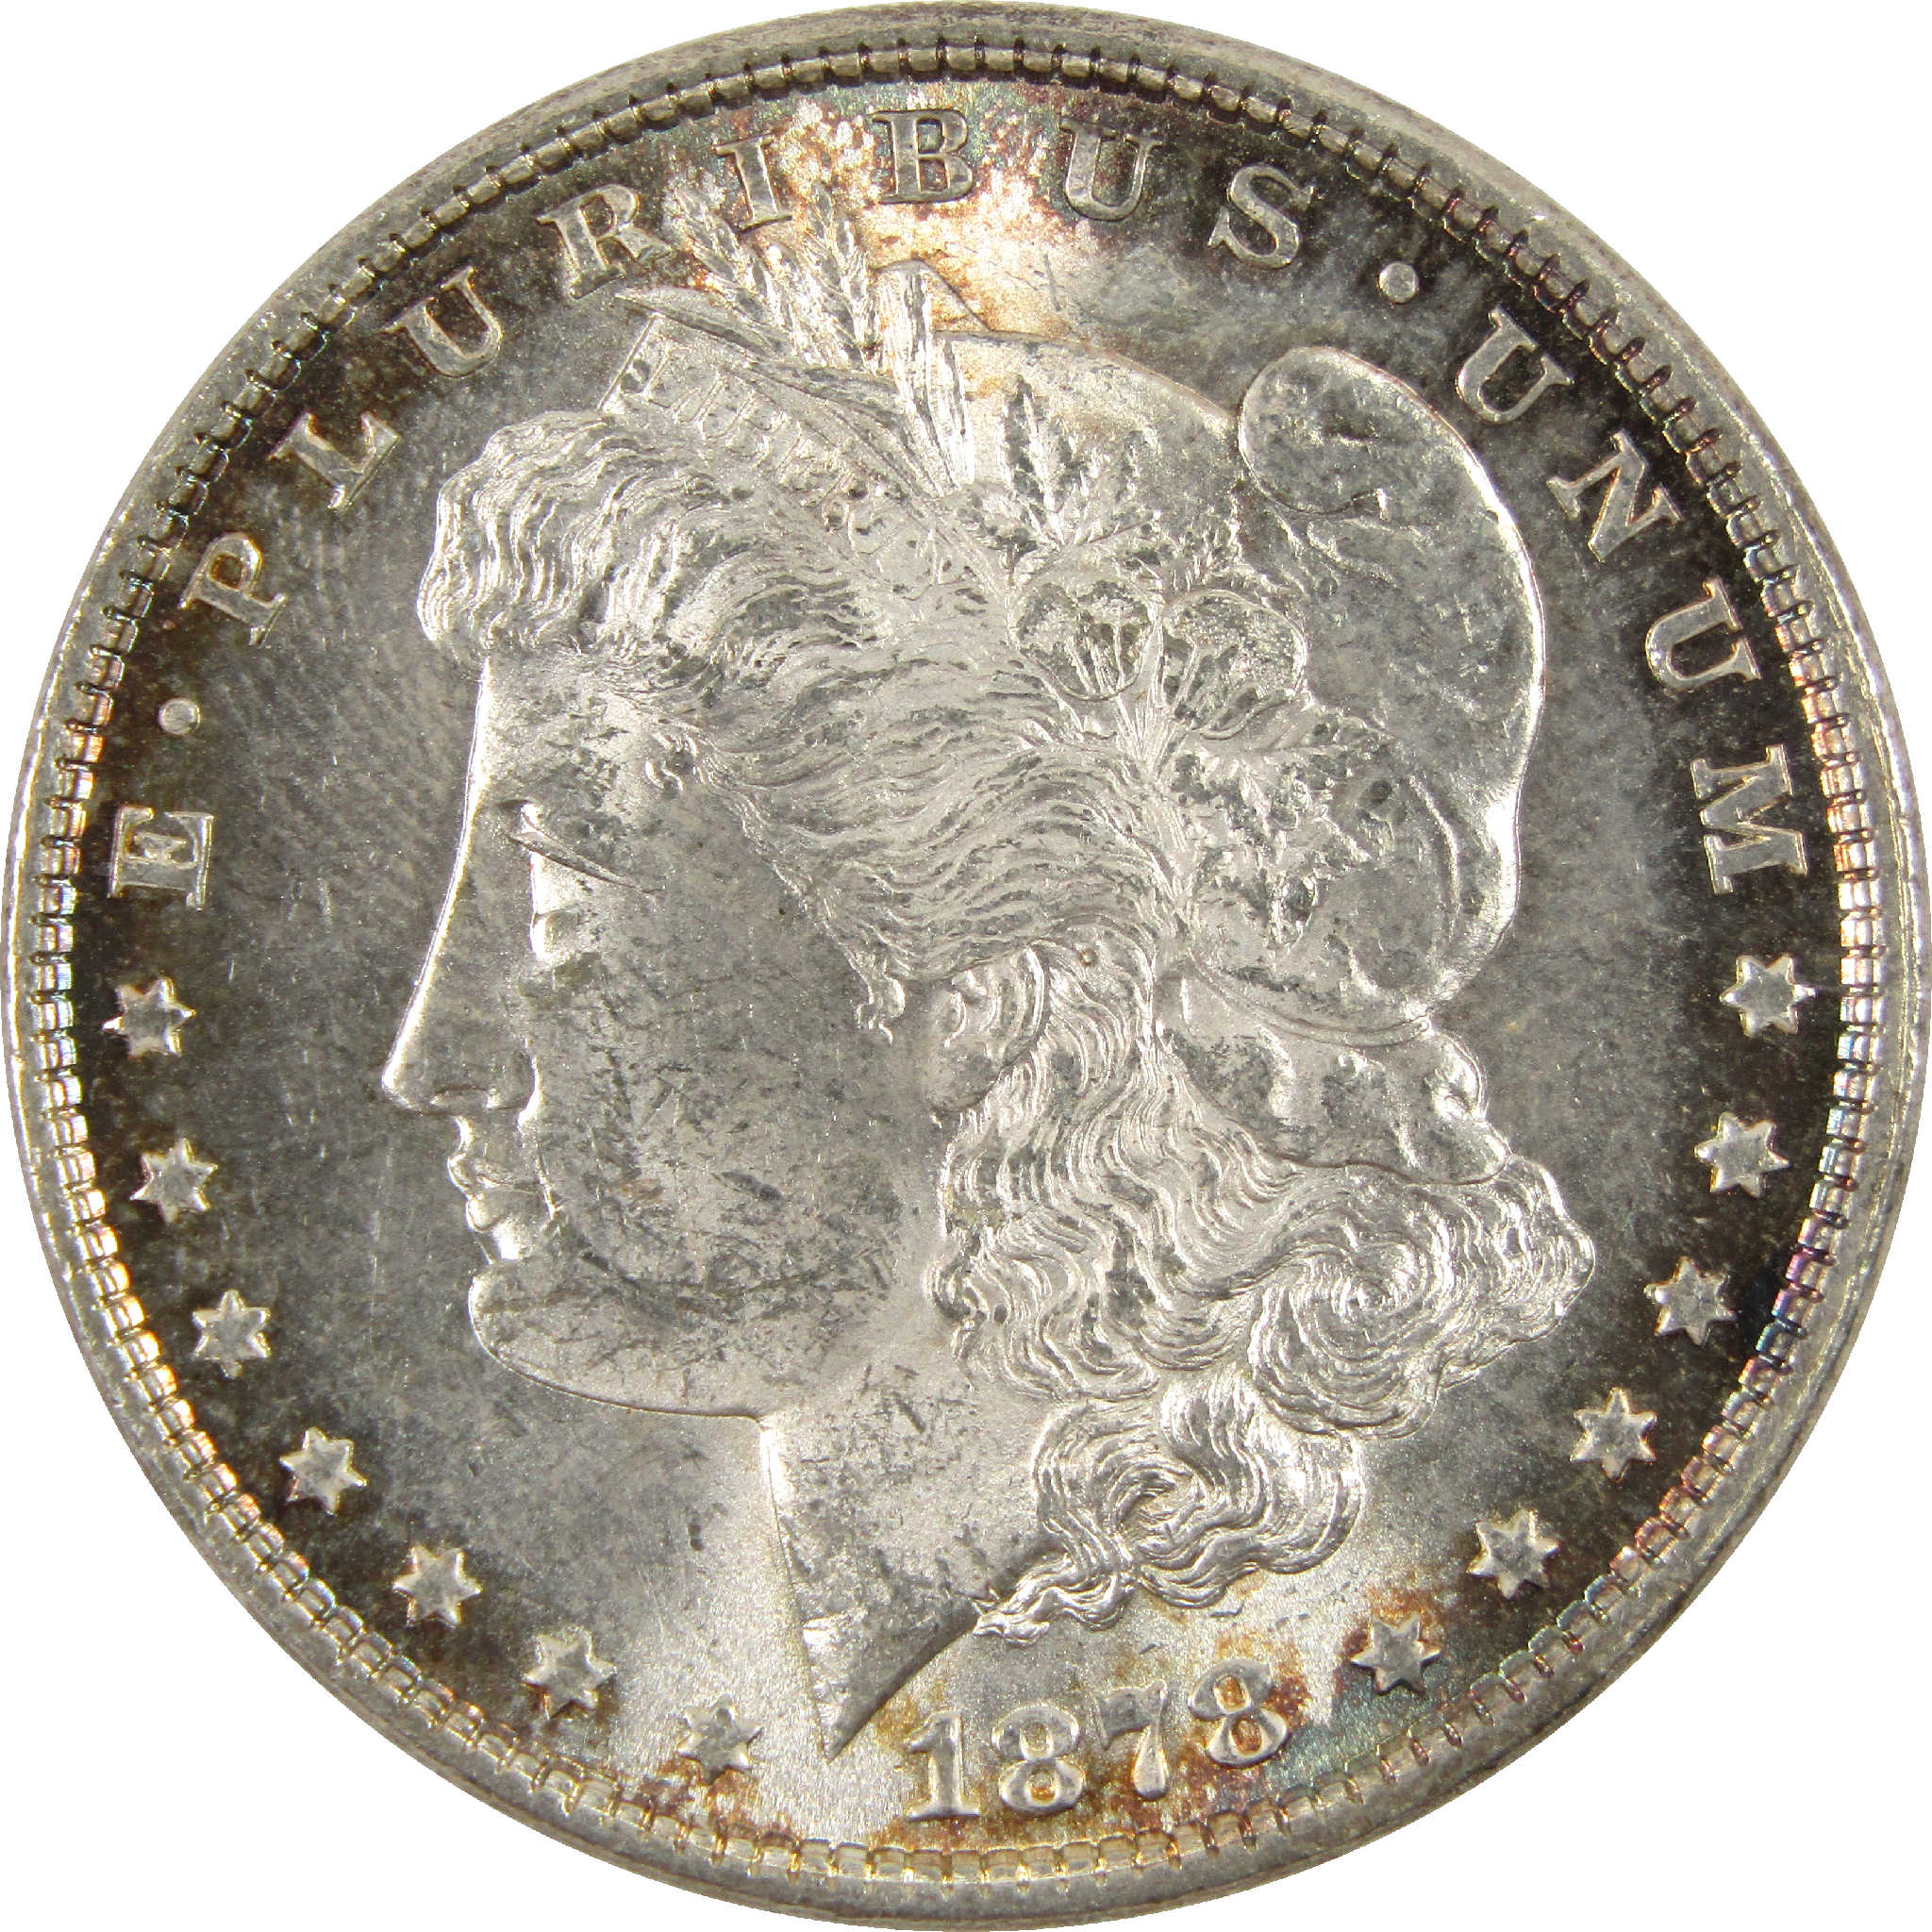 1878 7TF Rev 79 Morgan Dollar Uncirculated Silver $1 Coin SKU:CPC6262 - Morgan coin - Morgan silver dollar - Morgan silver dollar for sale - Profile Coins &amp; Collectibles